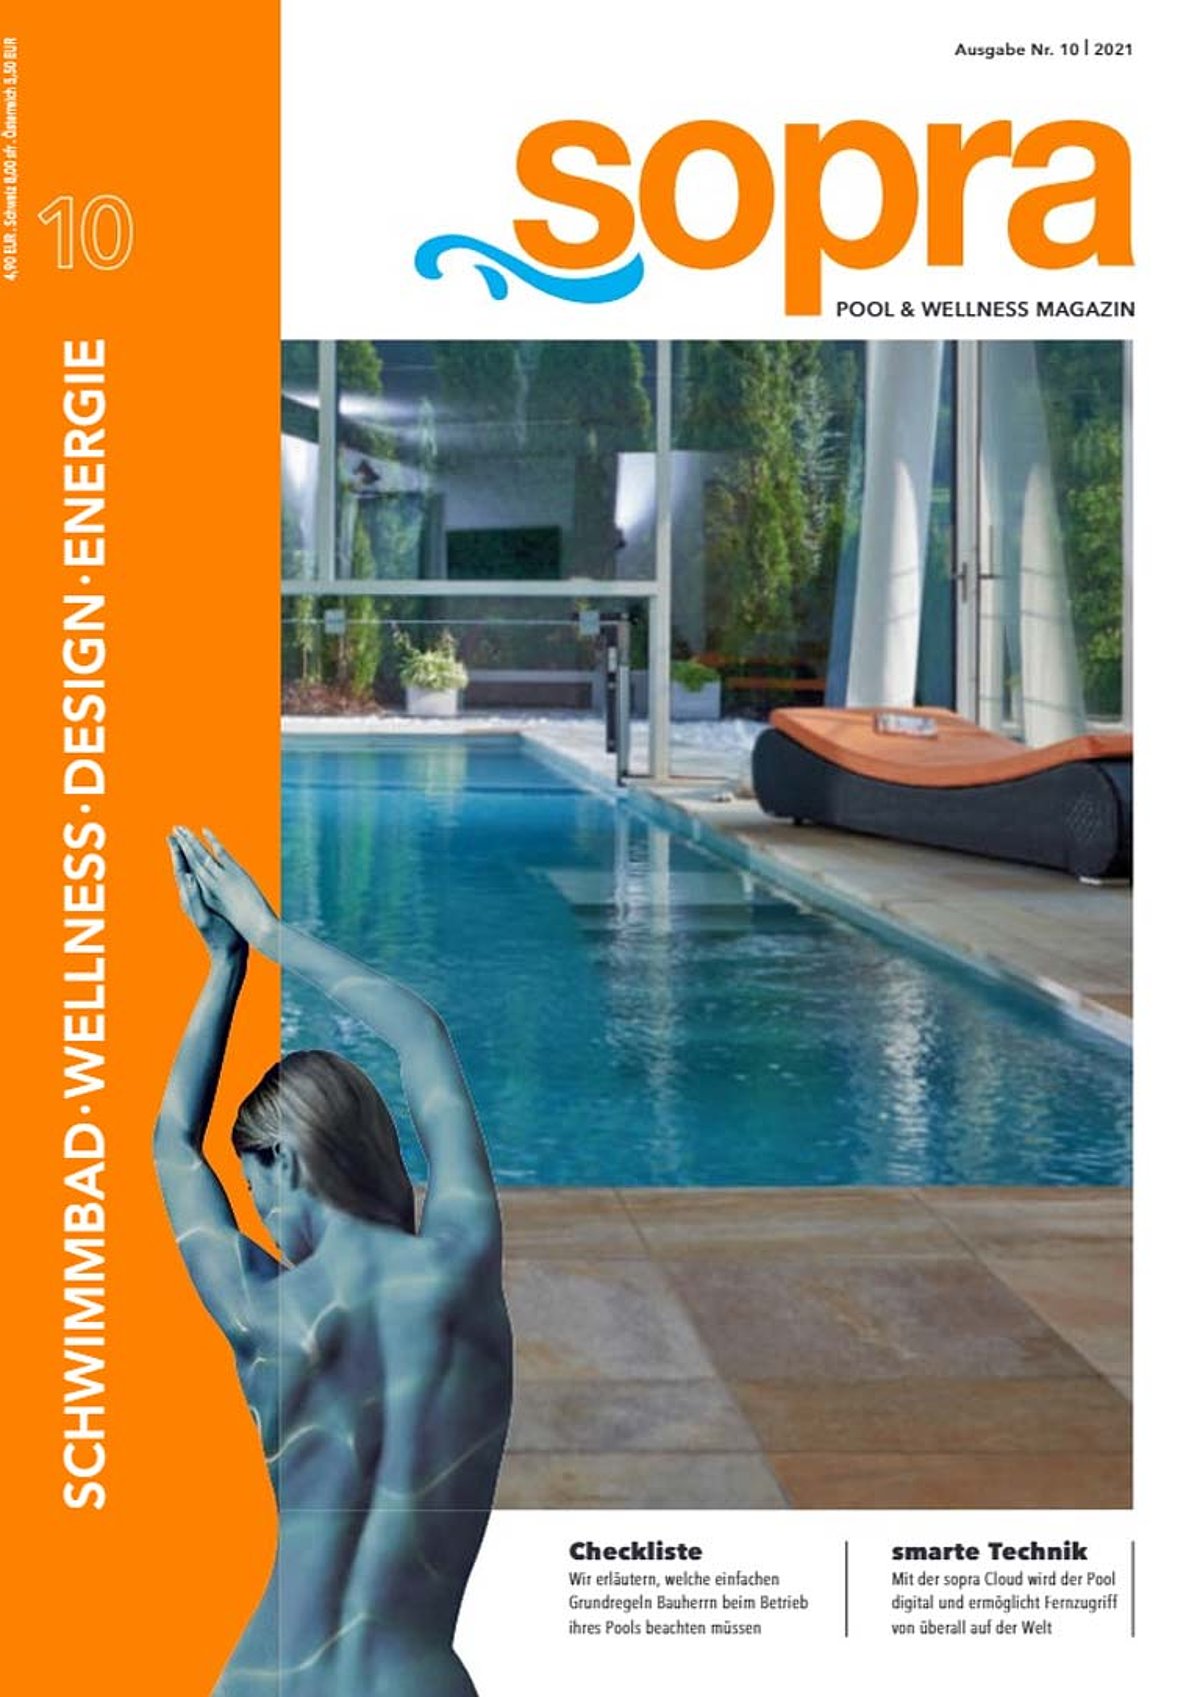 Das Cover der Druckversion des sopra Kundenmagazins Ausgabe 10.